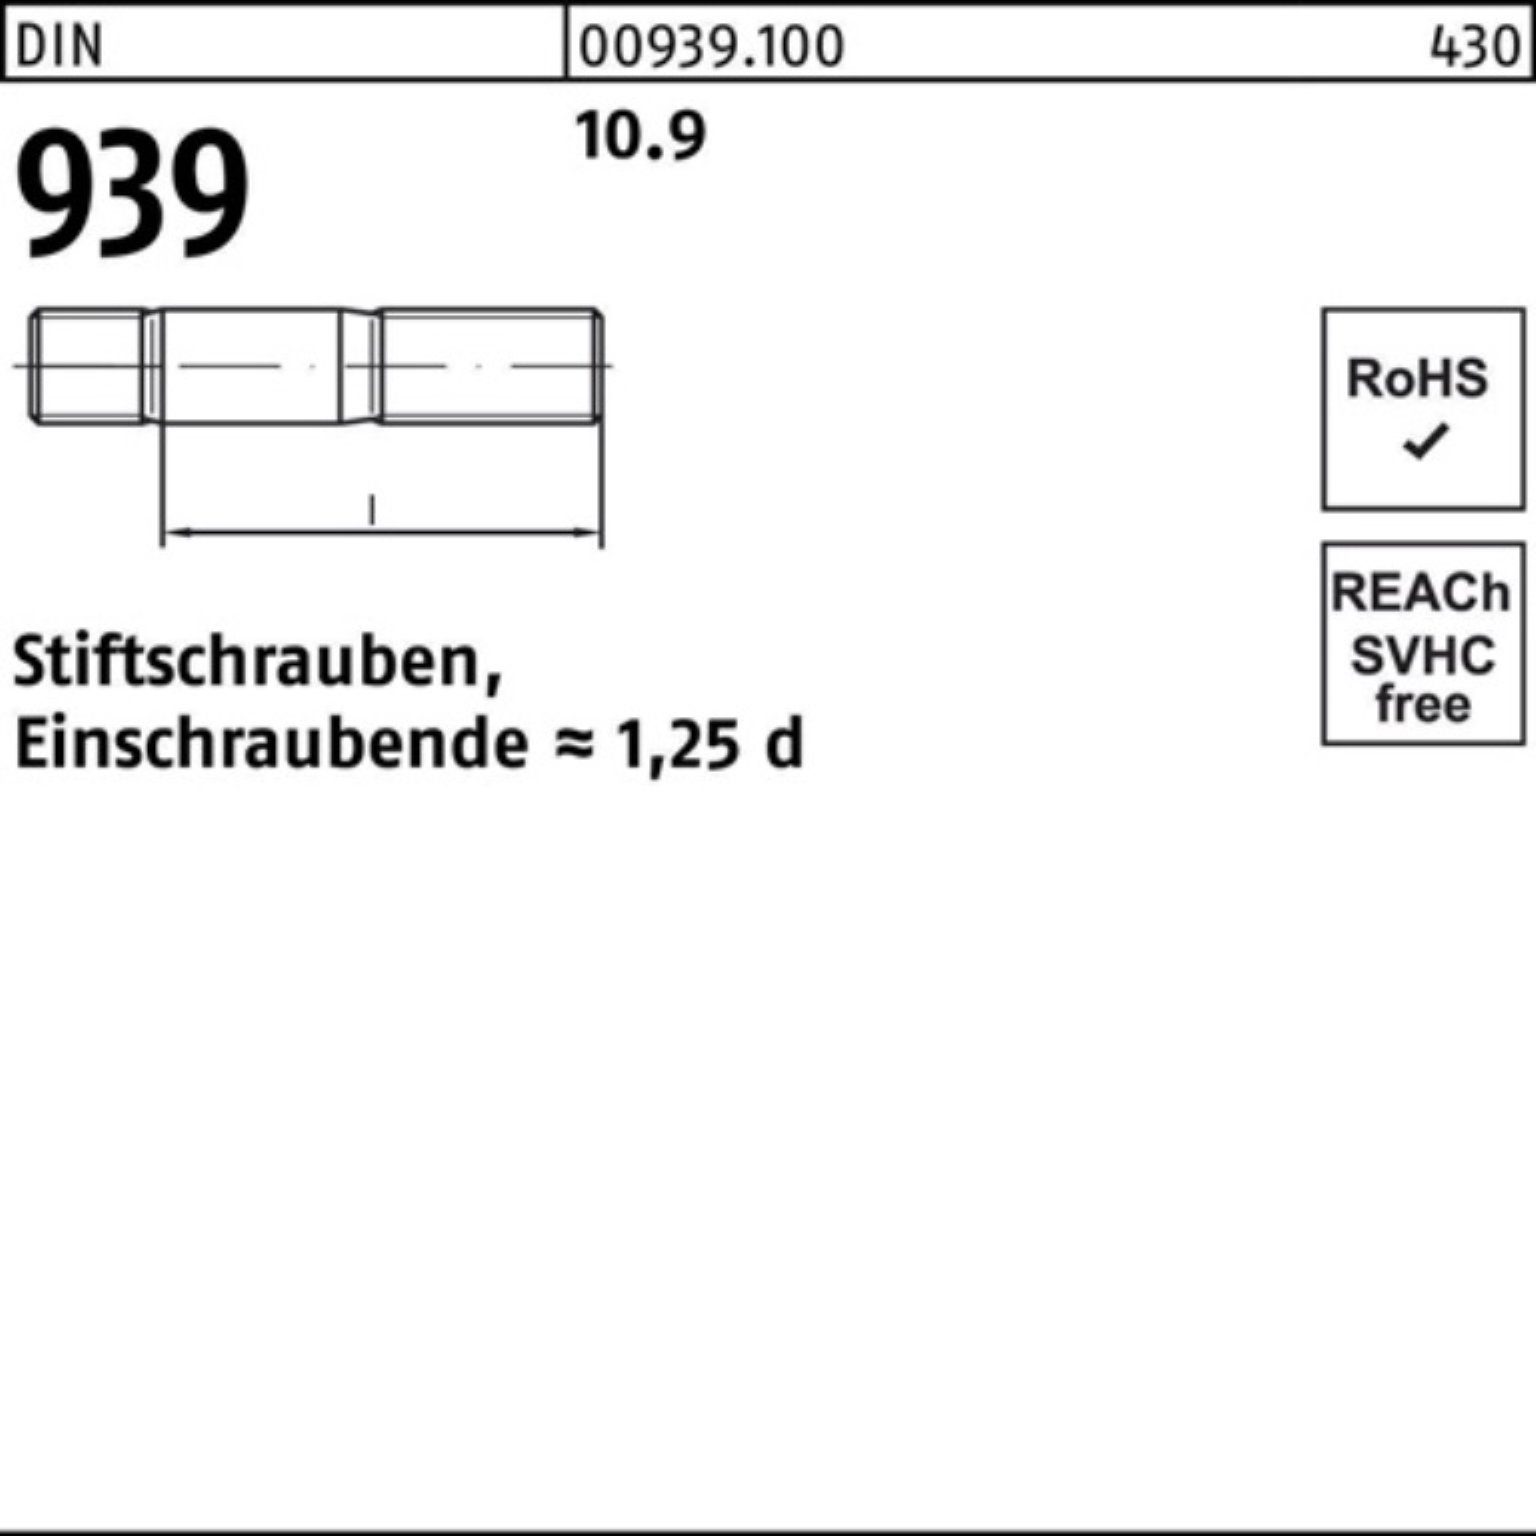 Reyher Stiftschraube 100er Stiftschraube DIN 50 50 Einschraubende=1,25d M12x Pack 10.9 939